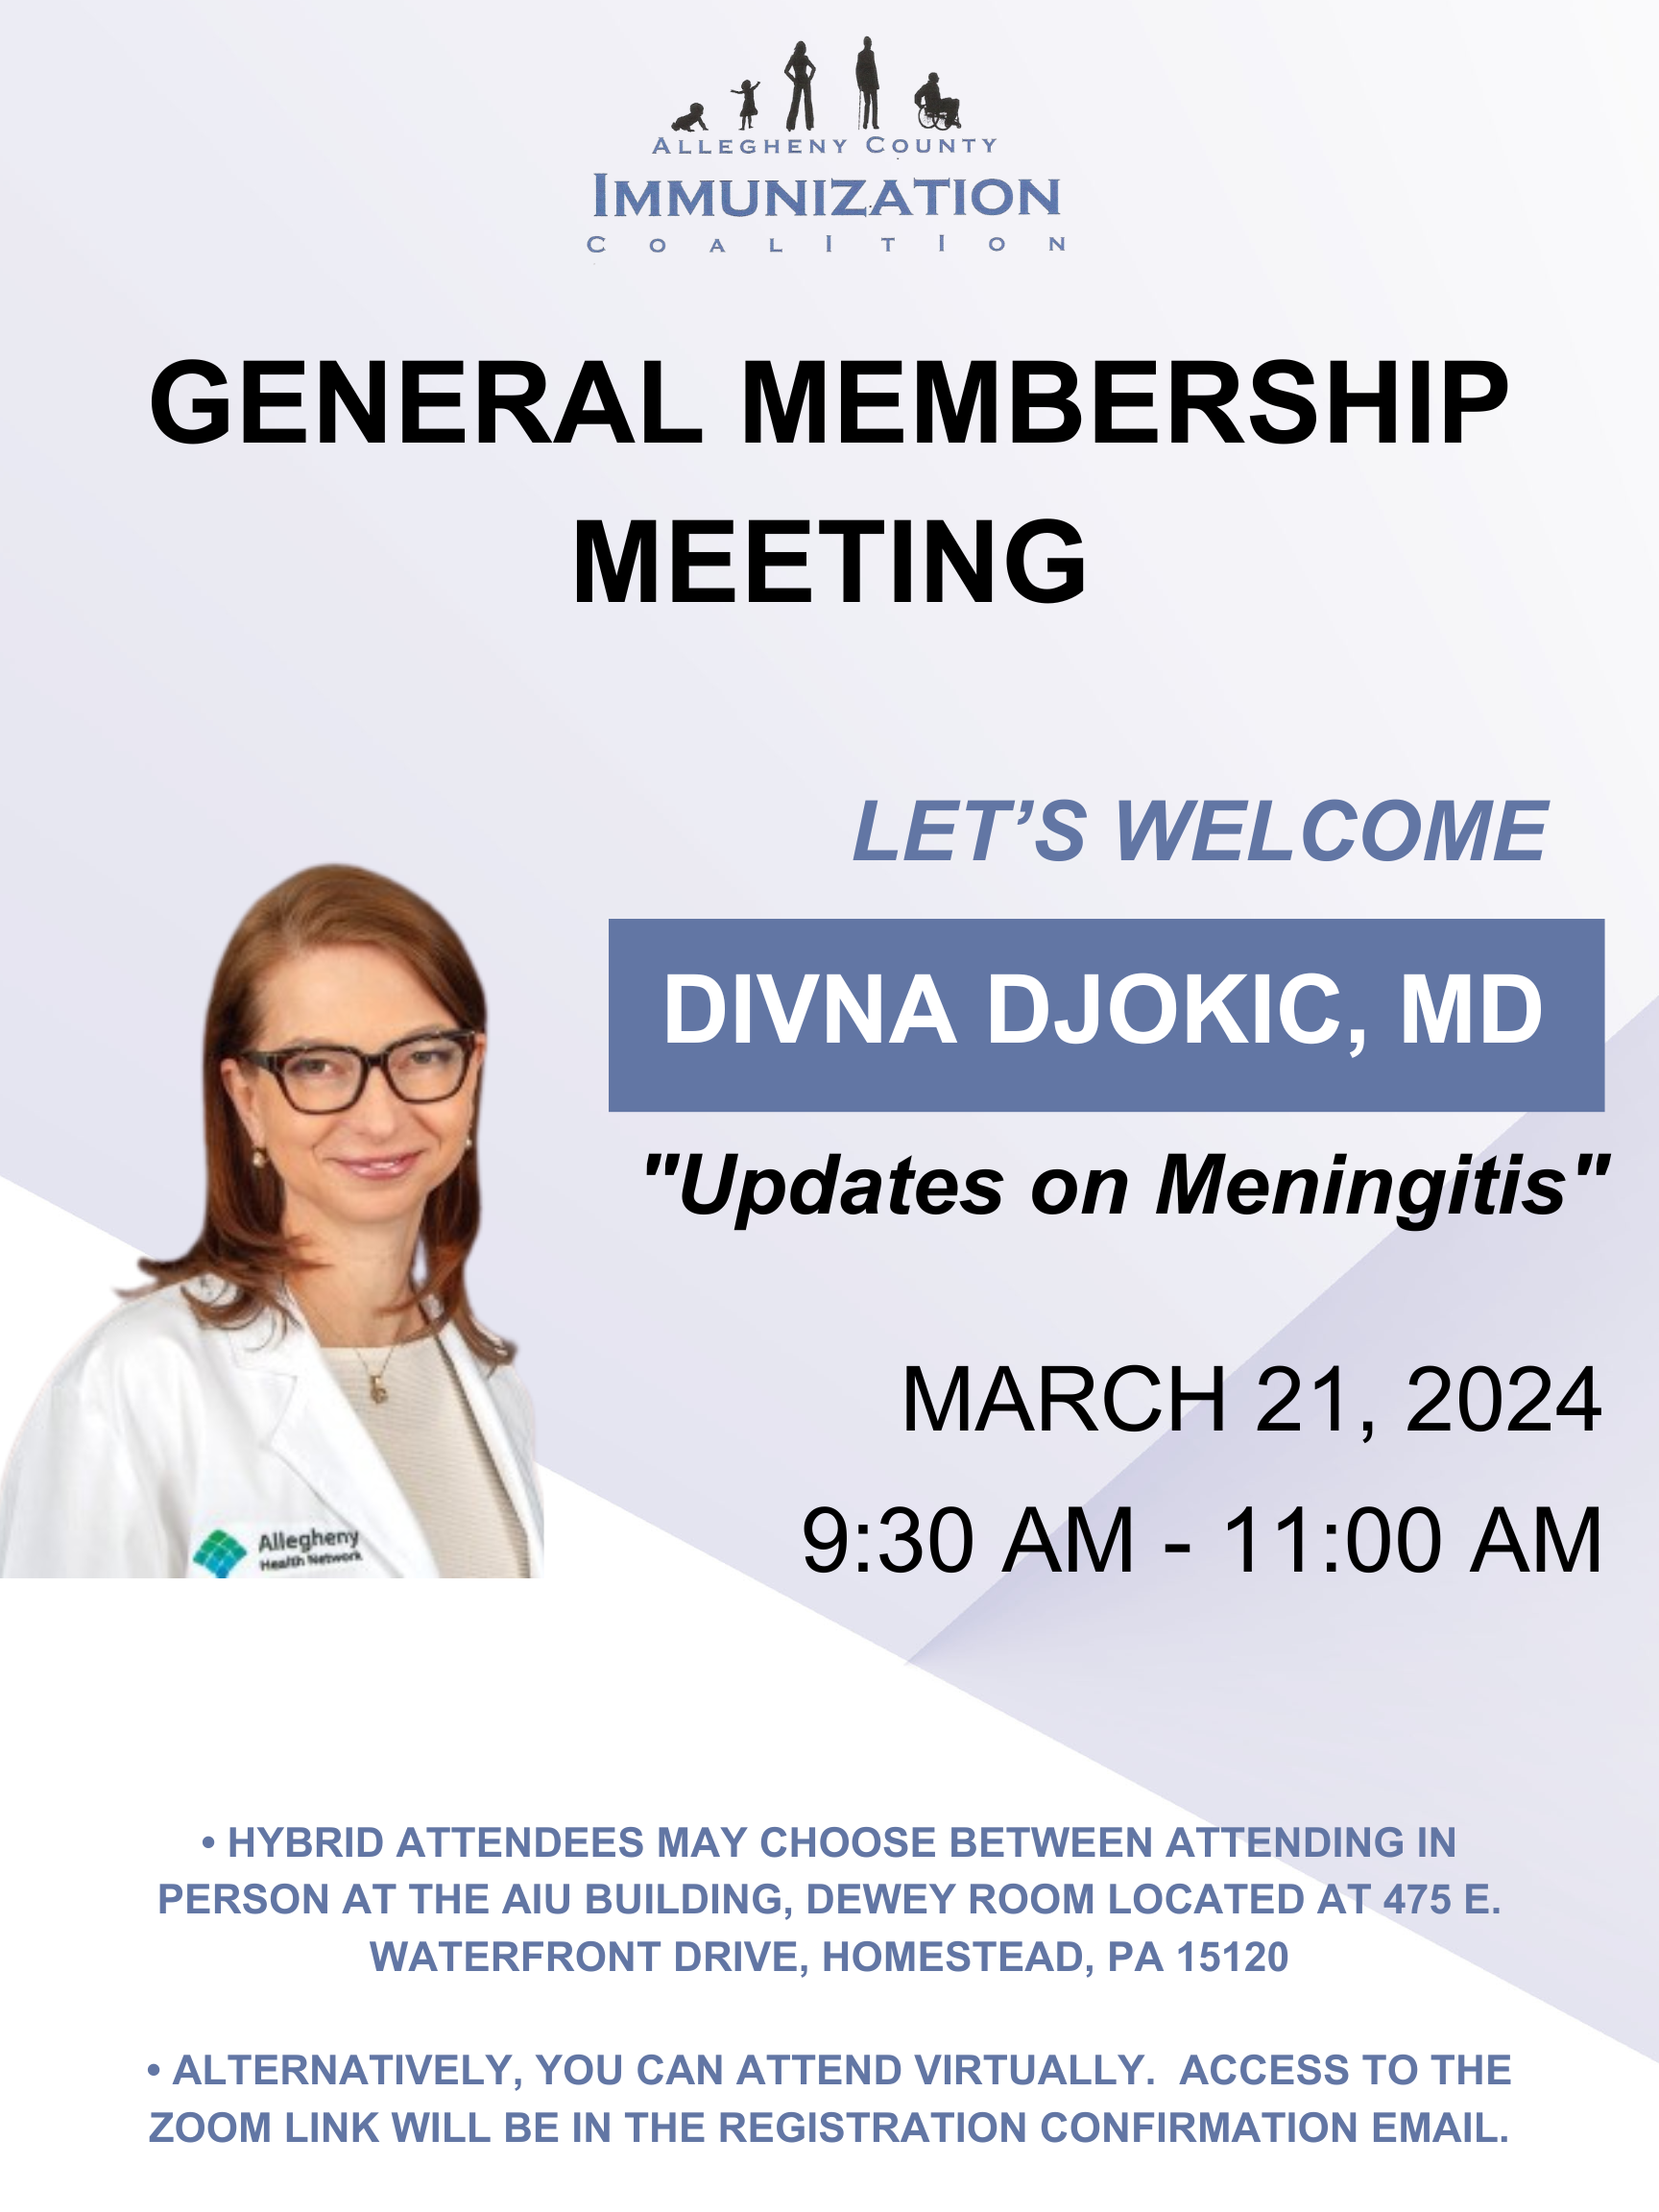 ACIC Quarterly Membership Meeting featuring Divna Djokic, MD "Meningitis Vaccine Updates"